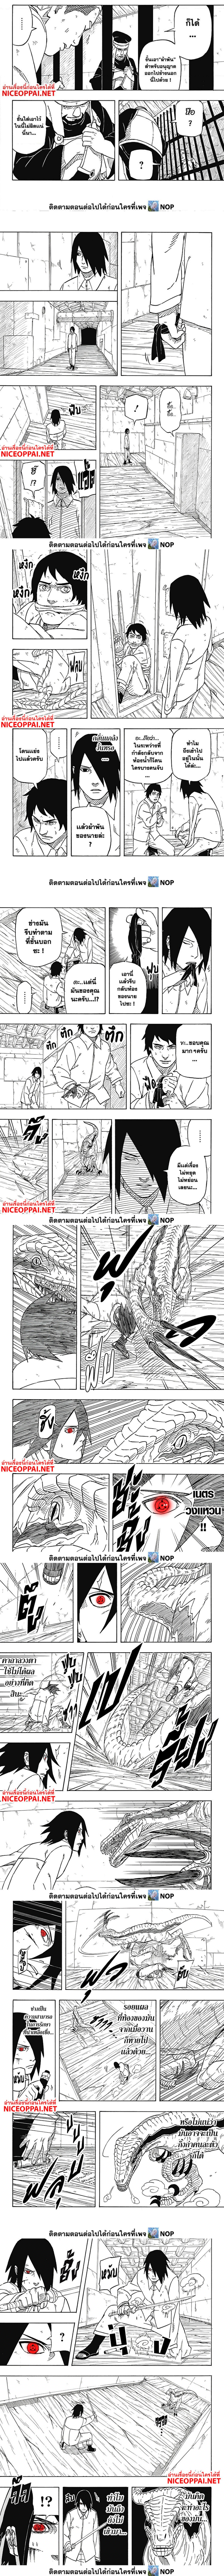 Naruto Sasuke’s Story The Uchiha and the Heavenly Stardust 3 (2)